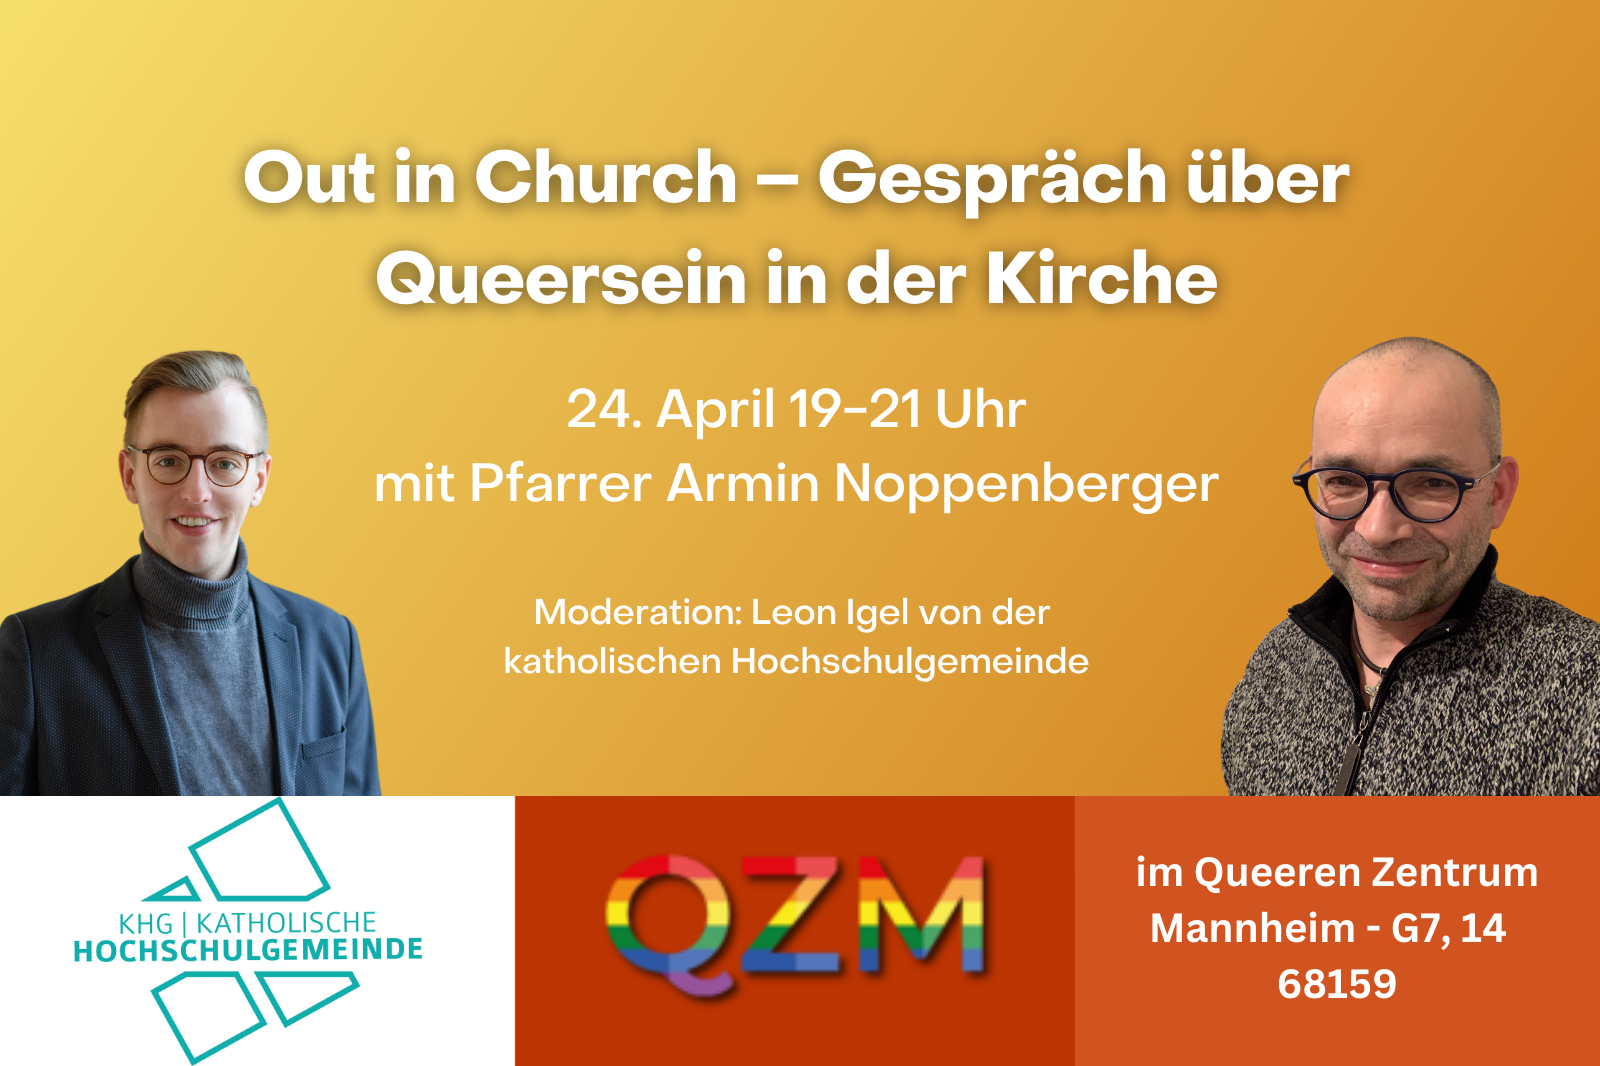 Veranstaltungsbild mit Leon Igel und Armin Noppenberger und den Infos zur Veranstaltung. Diese sind: 24. April um 19 Uhr im QZM, Gespräch zur Out In Church Bewegung.